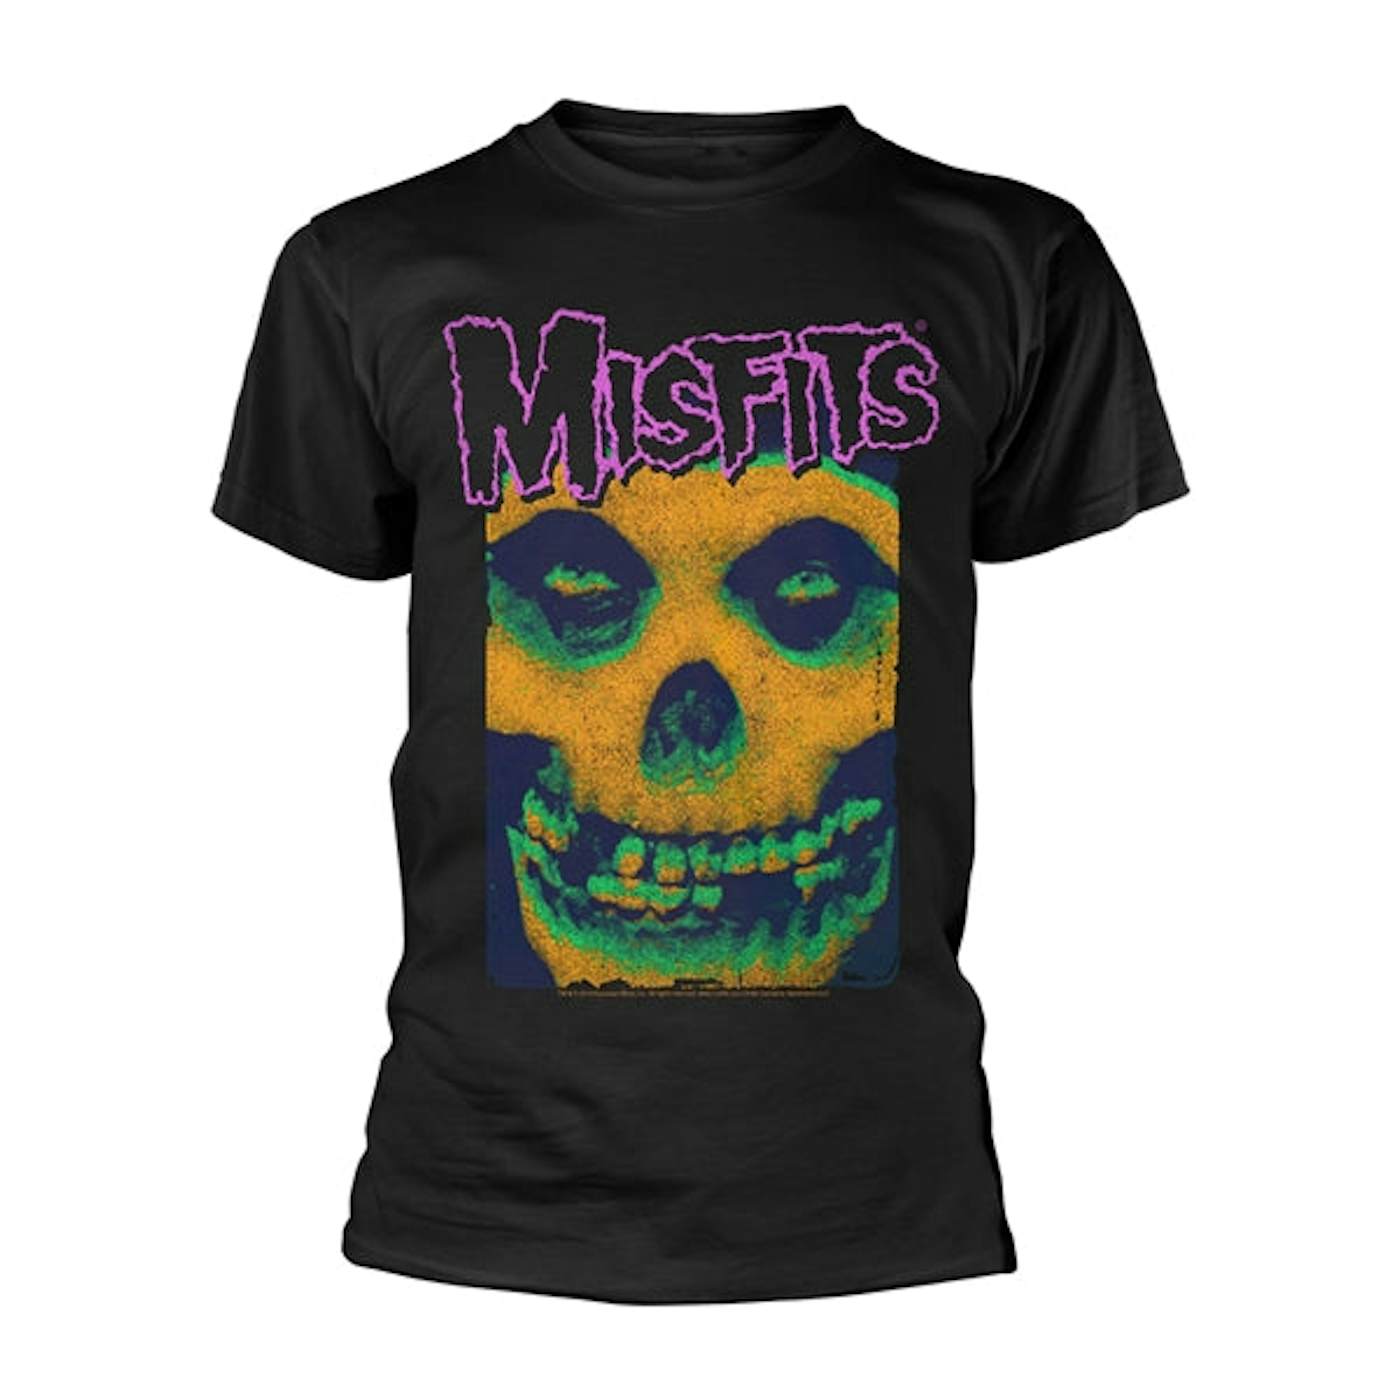 Misfits T-Shirt - Warhol